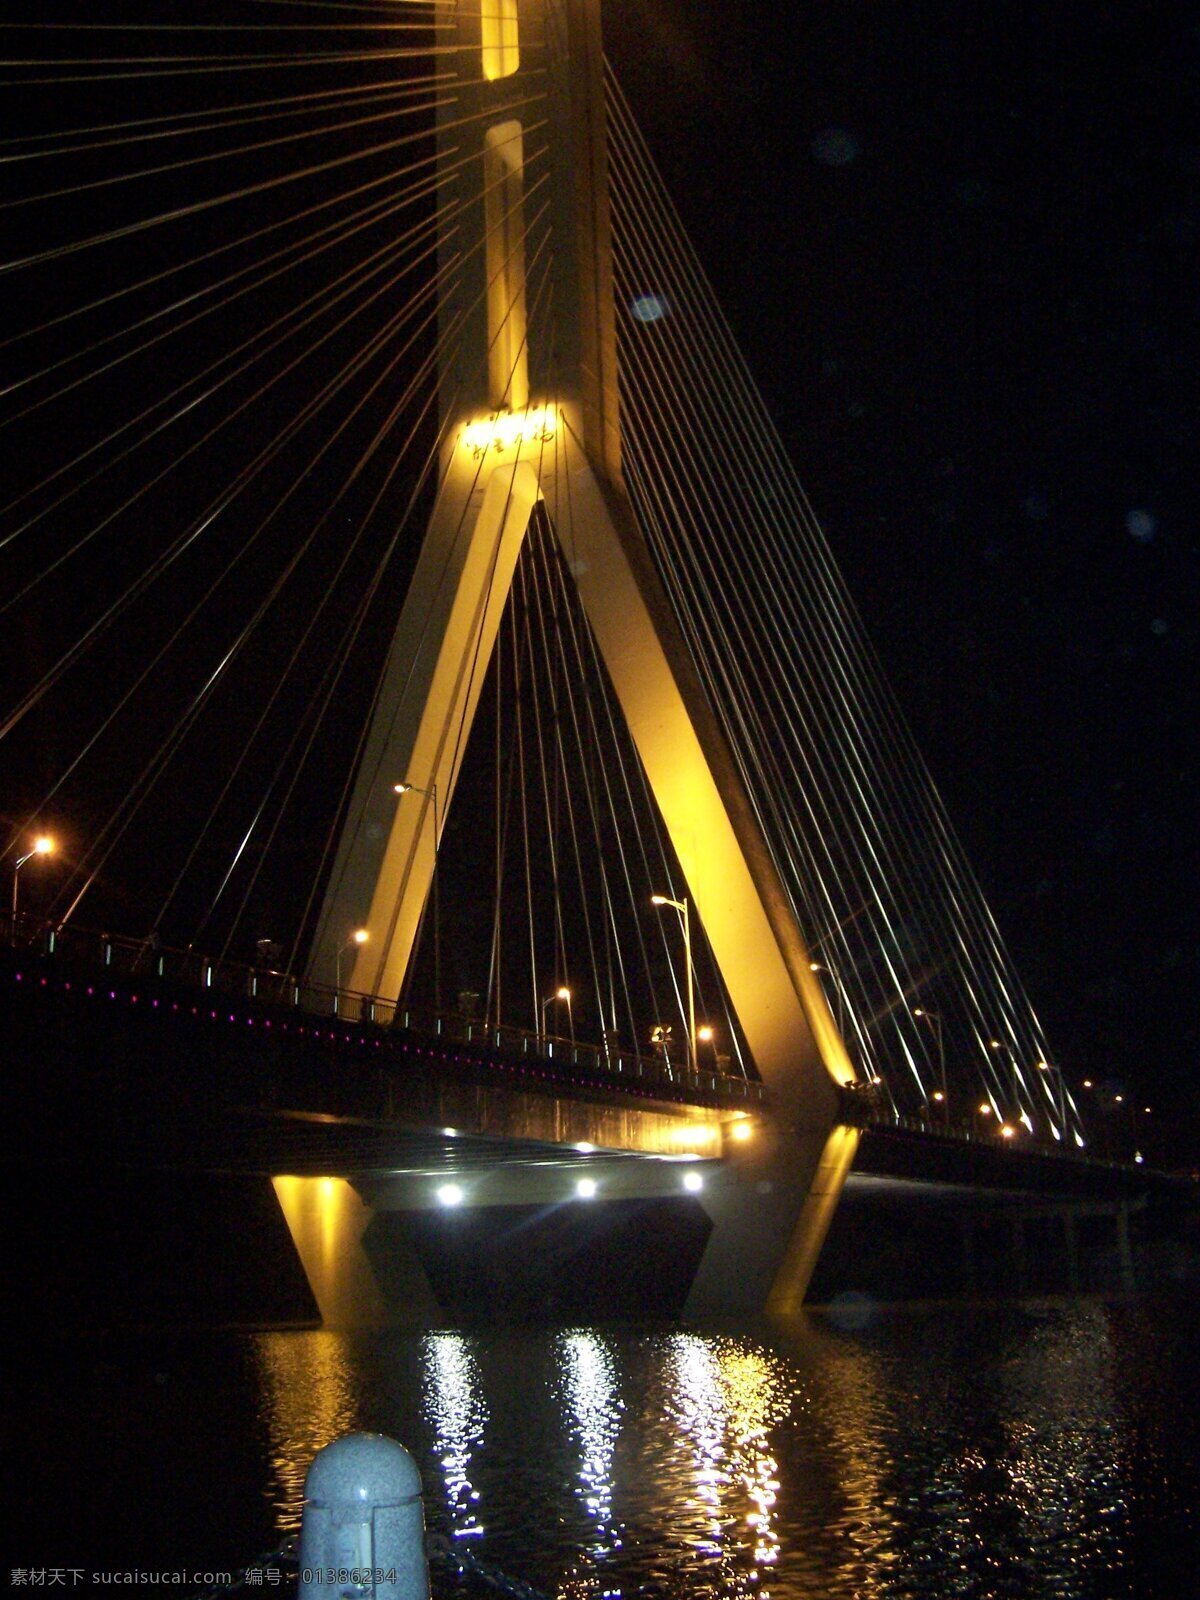 紫金大桥夜景 风景 南明湖 秀山 丽水 绿谷风景 国内旅游 旅游摄影